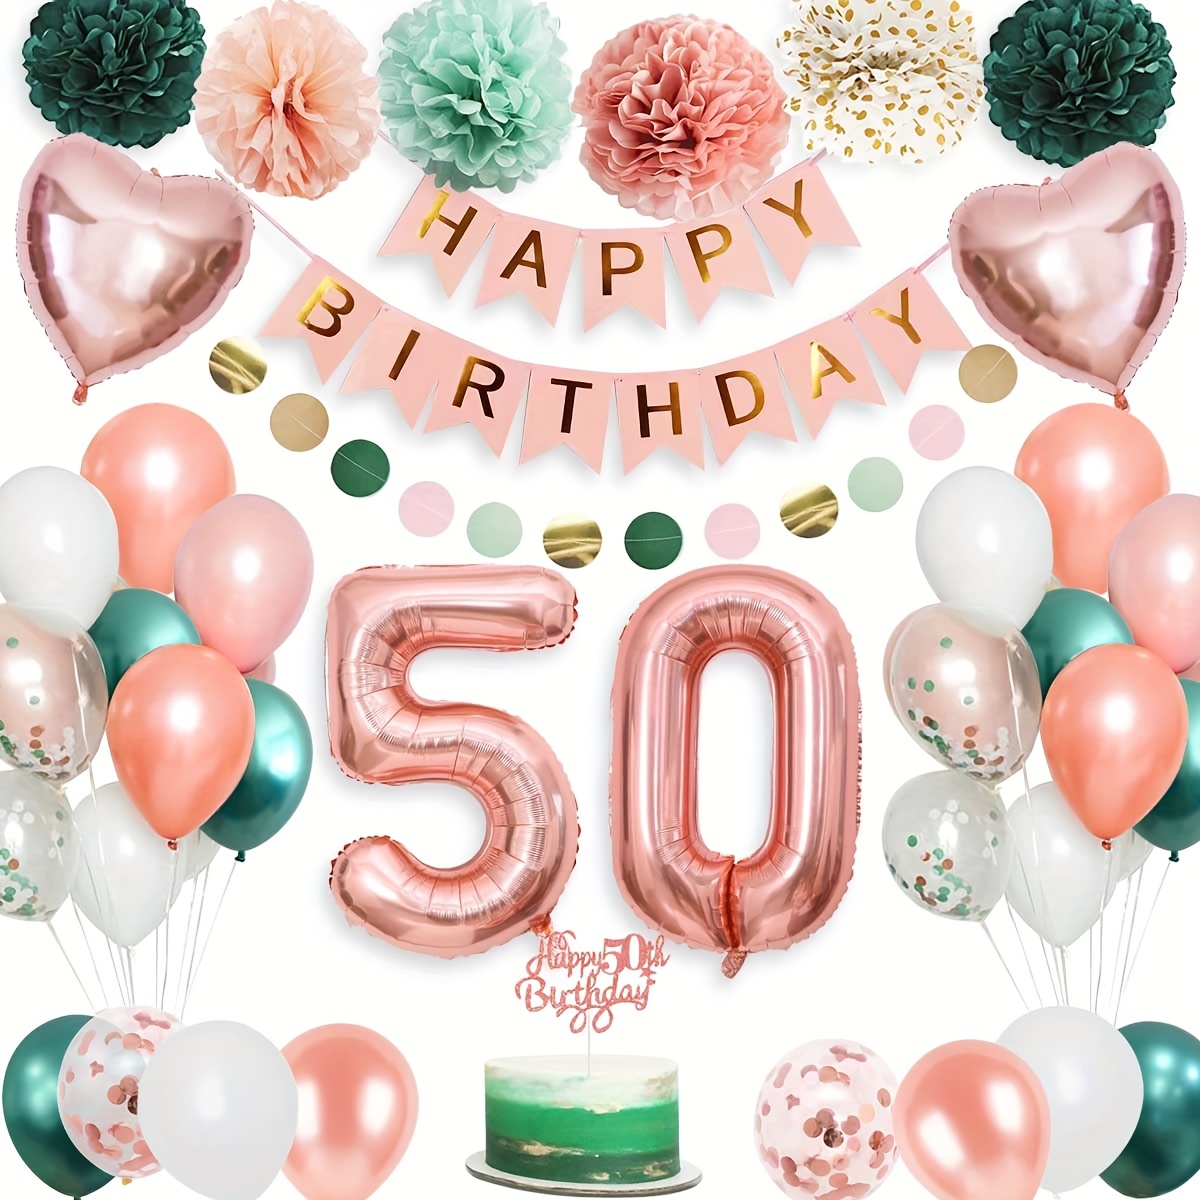 Set, Kit Di Ghirlande Di Palloncini Per Il 50° Compleanno, Decorazioni Per  Feste Di Compleanno Per Uomini E Donne, Con Pom Pom Di Carta, Banner Di